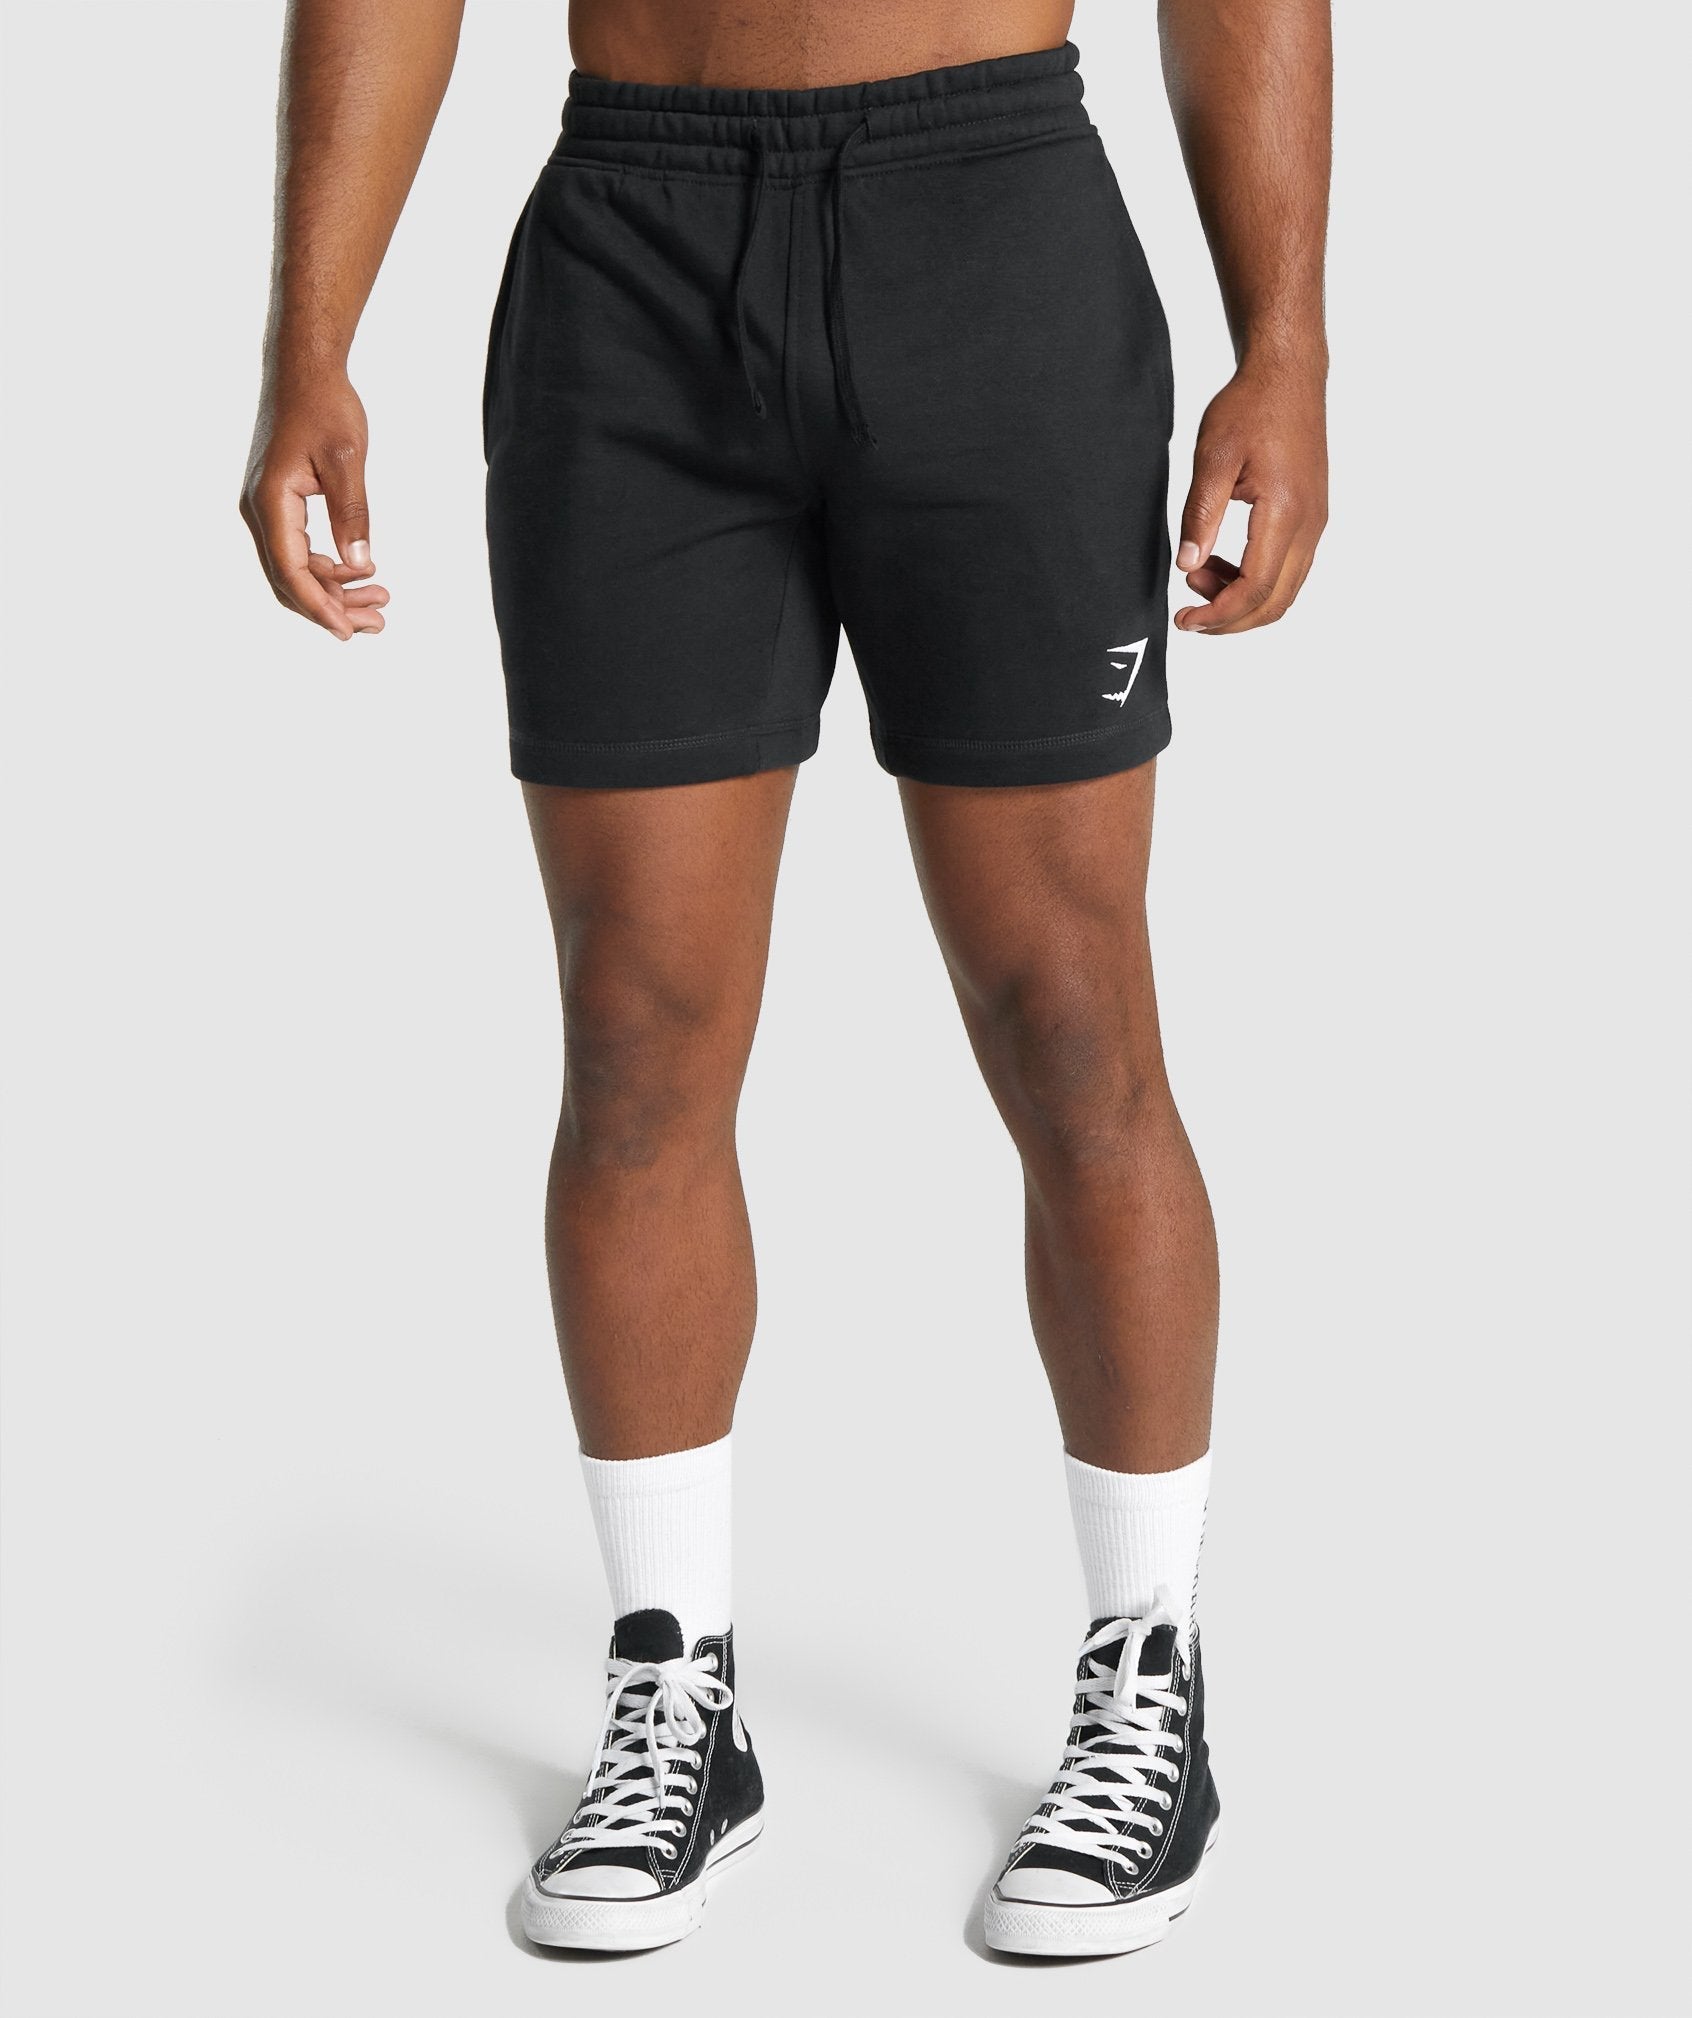 Homme Short Shorts d'entrainement Jogging Fitness Musculation de Baggy  Légers Ample Imperméable Respirant avec Poches,Black-XL : : Mode